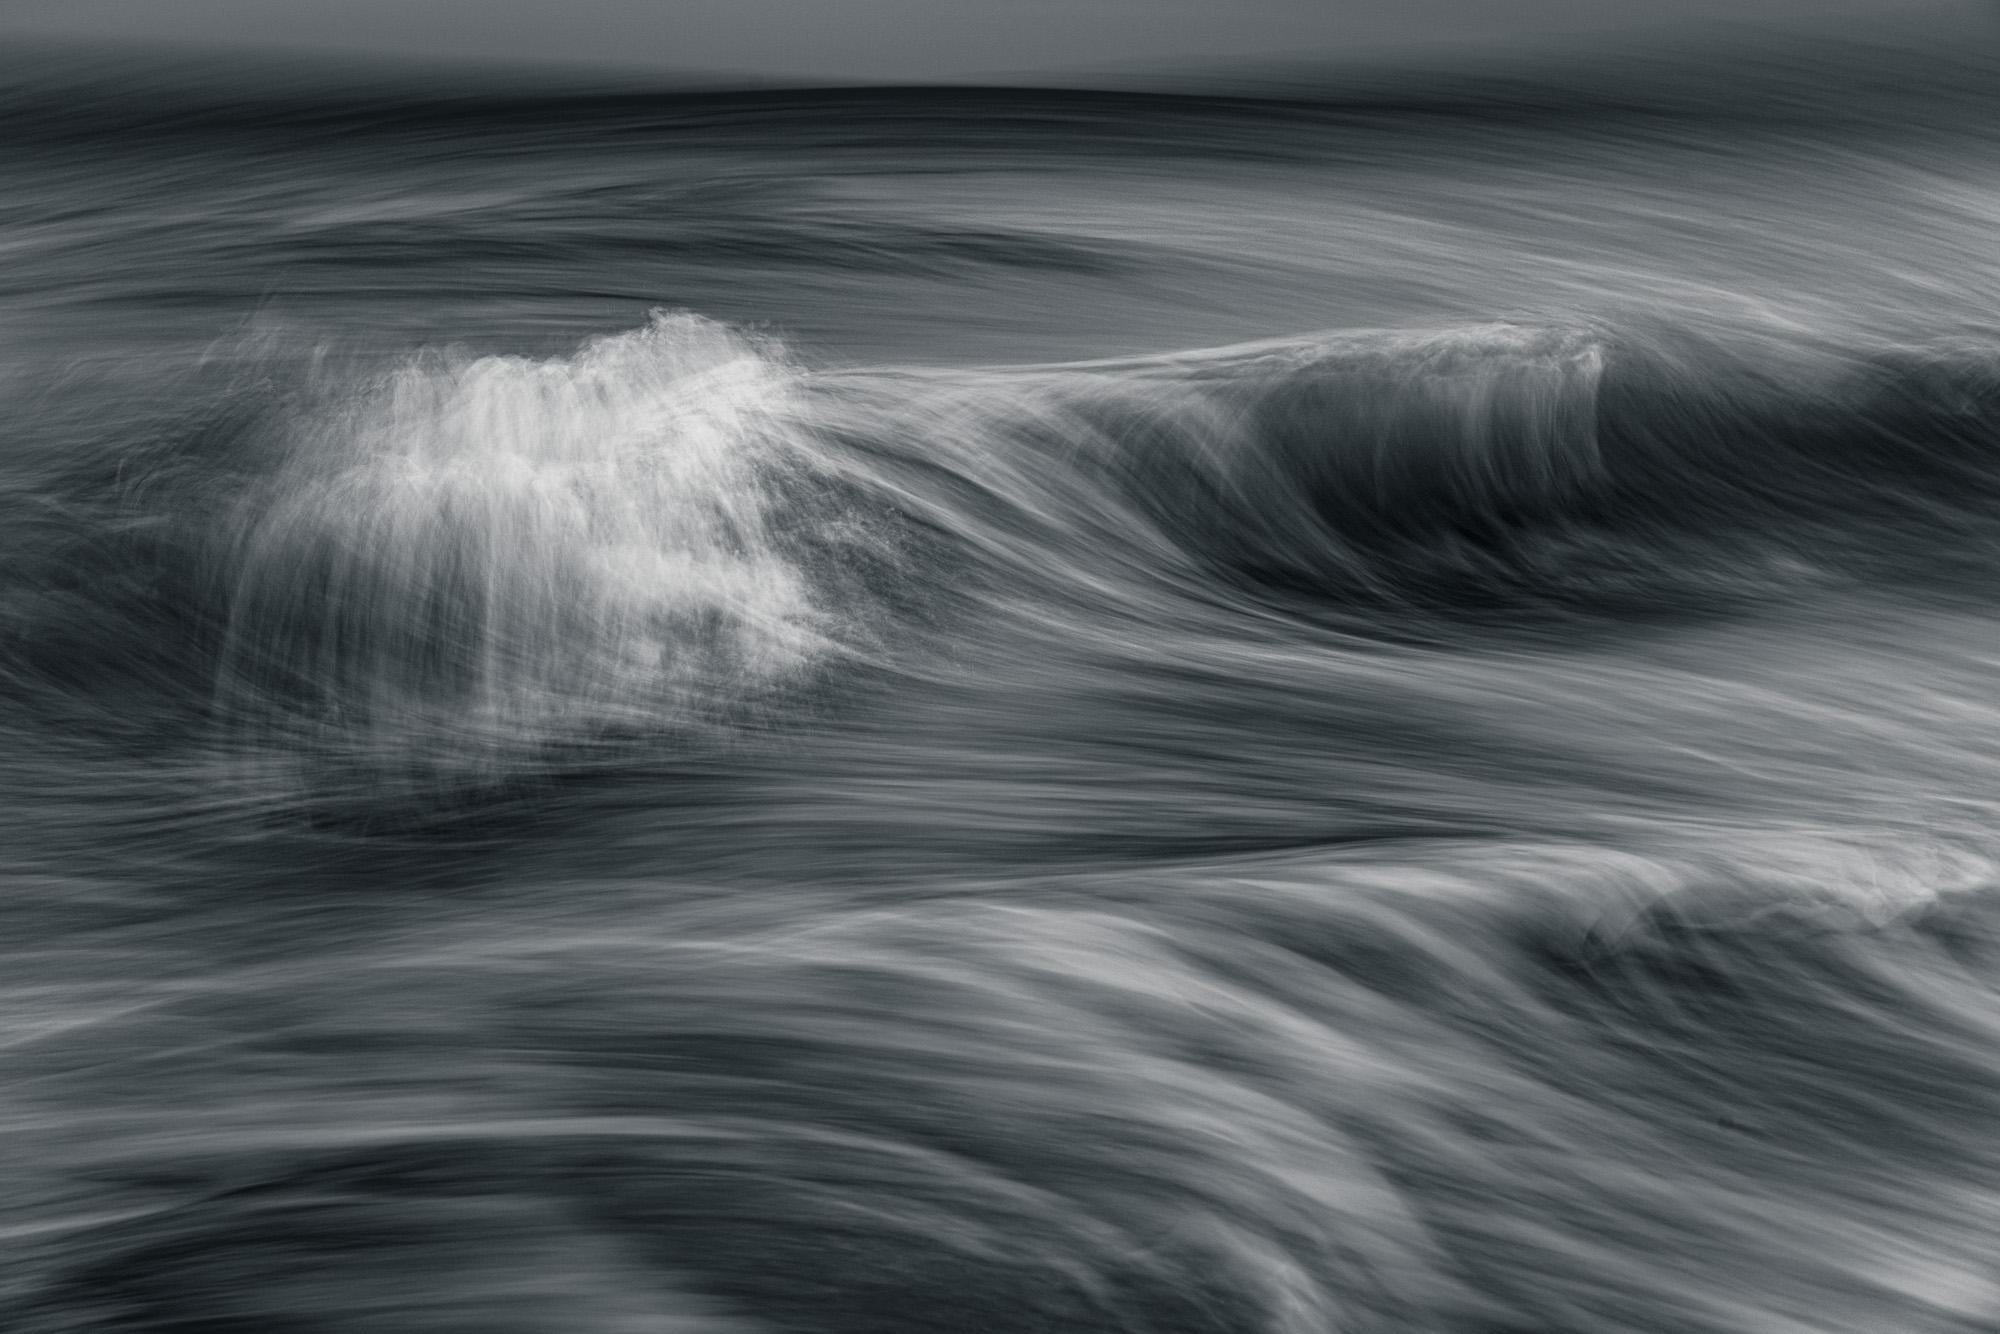 Landscape Photograph Howard Lewis - Photographie en édition limitée « Waves » en noir et blanc, océan, paysage marin n°49